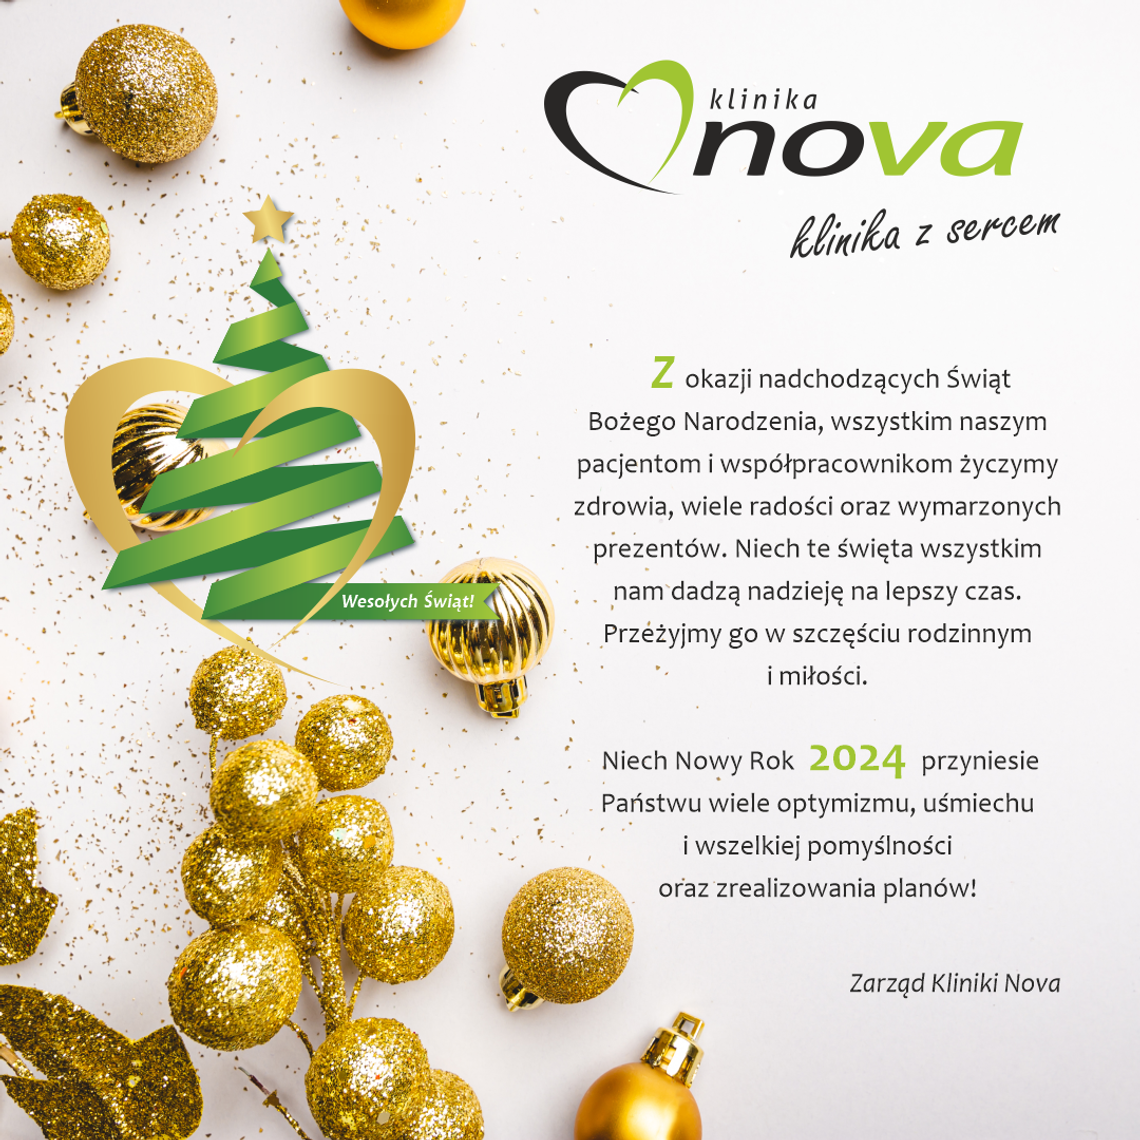 Życzenia bożonarodzeniowe i noworoczne Kliniki Nova dla Czytelników KK24.pl